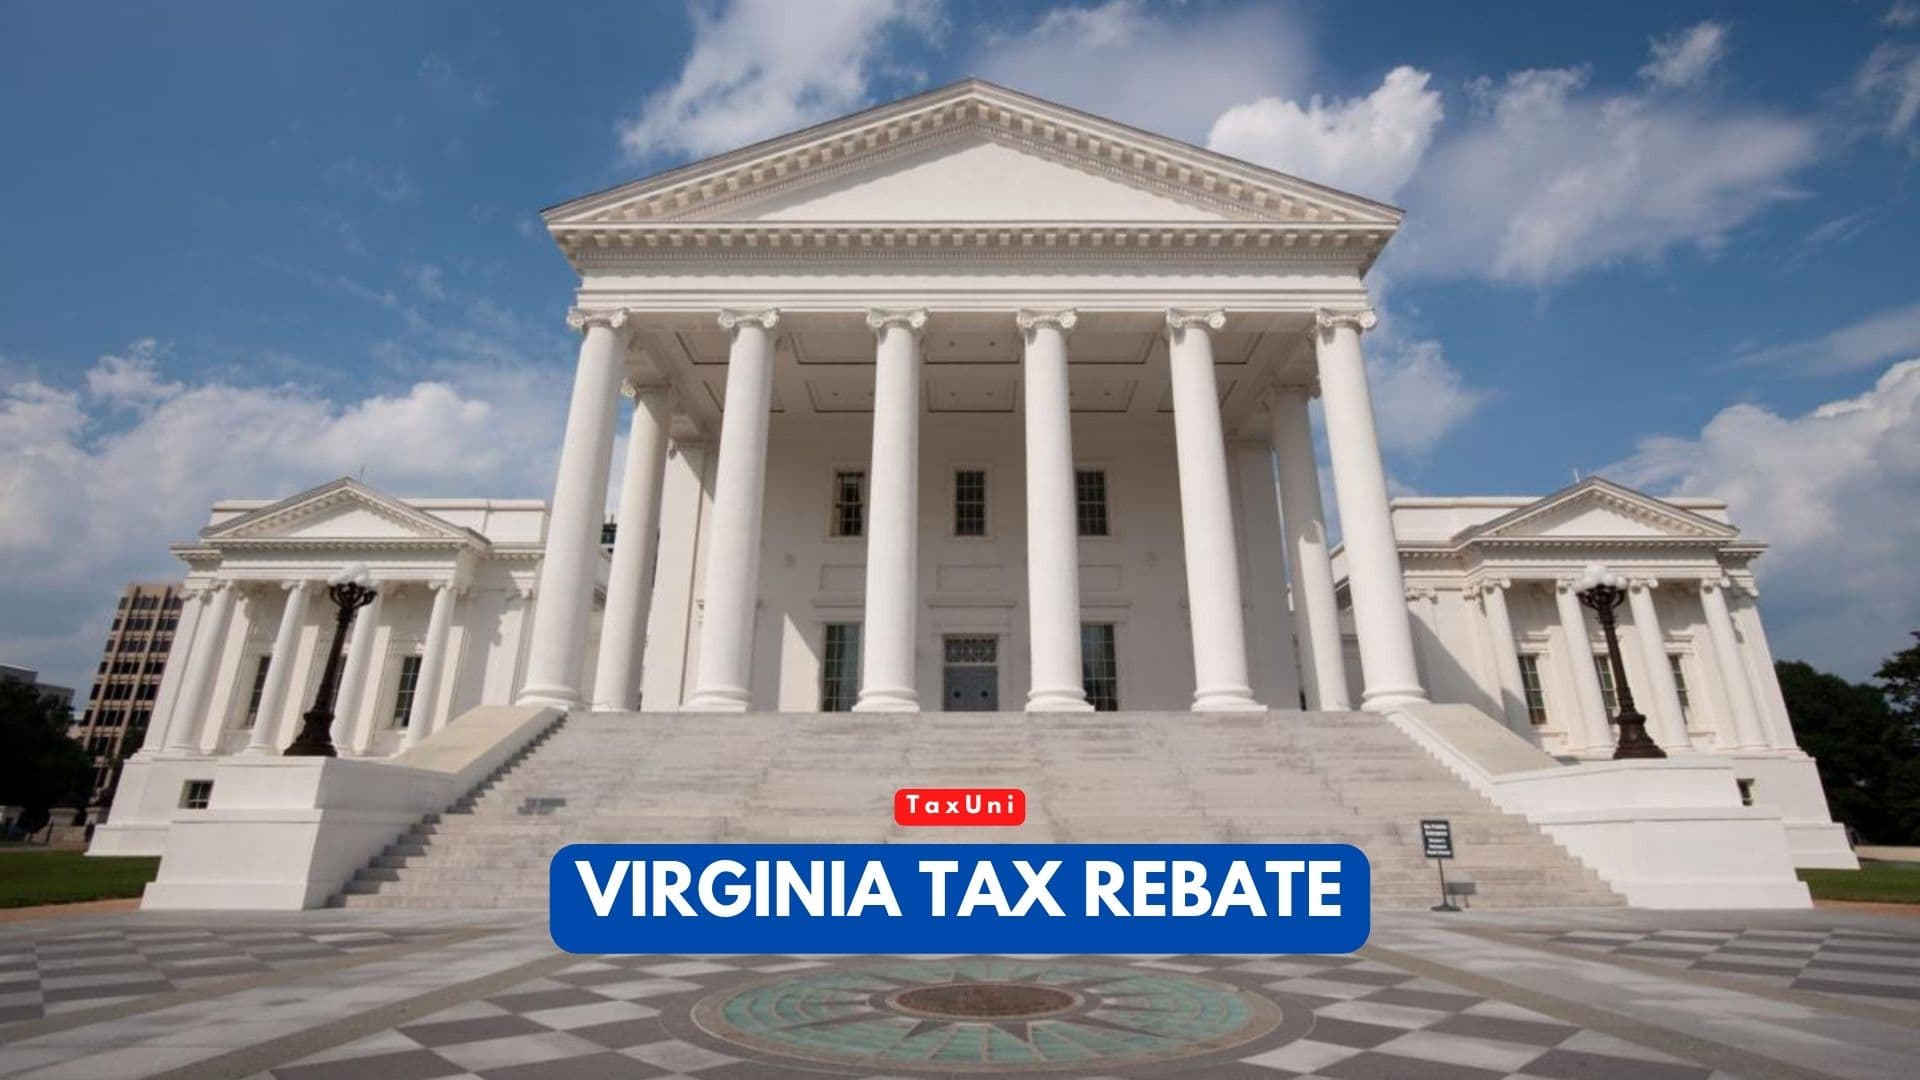 500 Virginia Tax Rebate